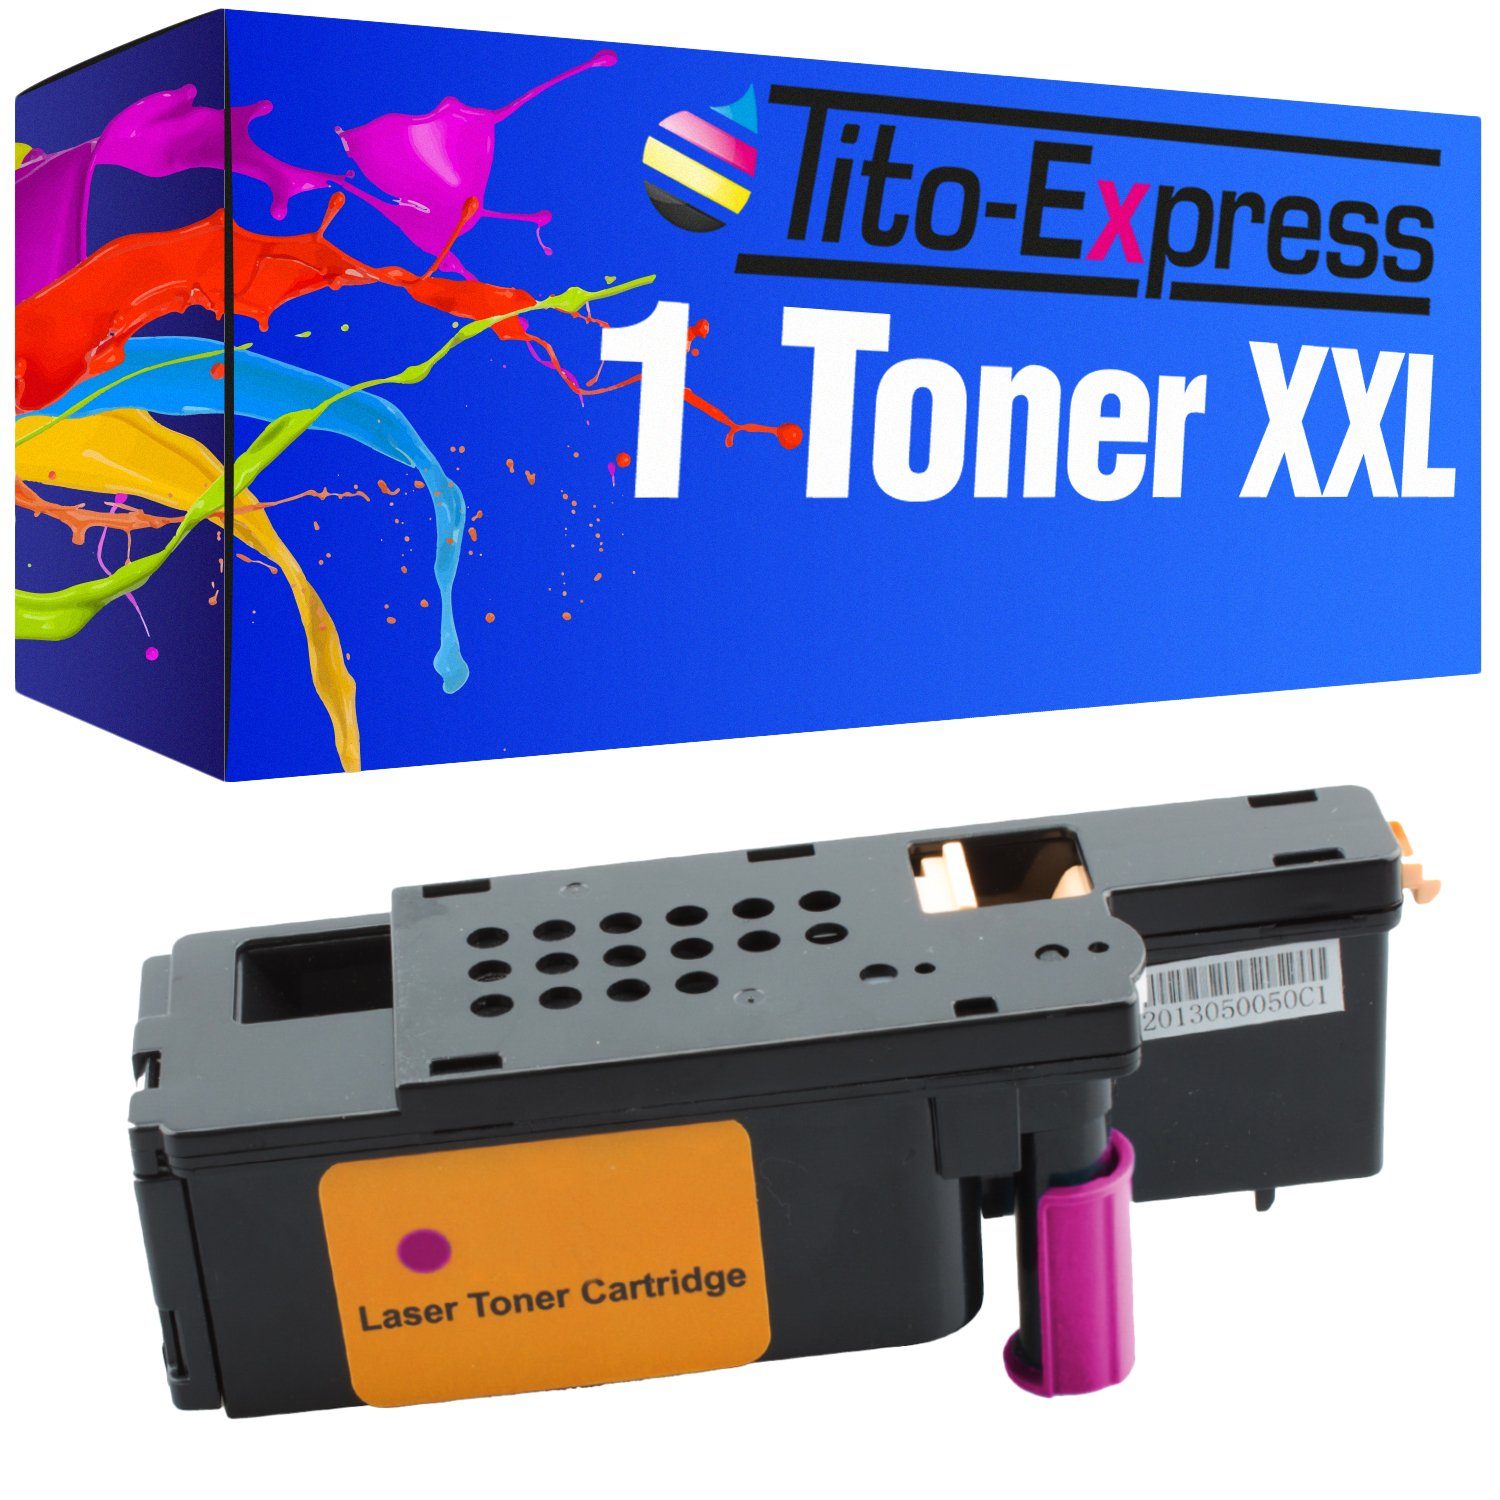 Tito-Express Tonerpatrone ersetzt Xerox 6000 Xerox-6000 Xerox6000 Magenta, für Phaser 6000 6010 N WorkCentre 6000 Series WC 6015 VB | Tonerpatronen